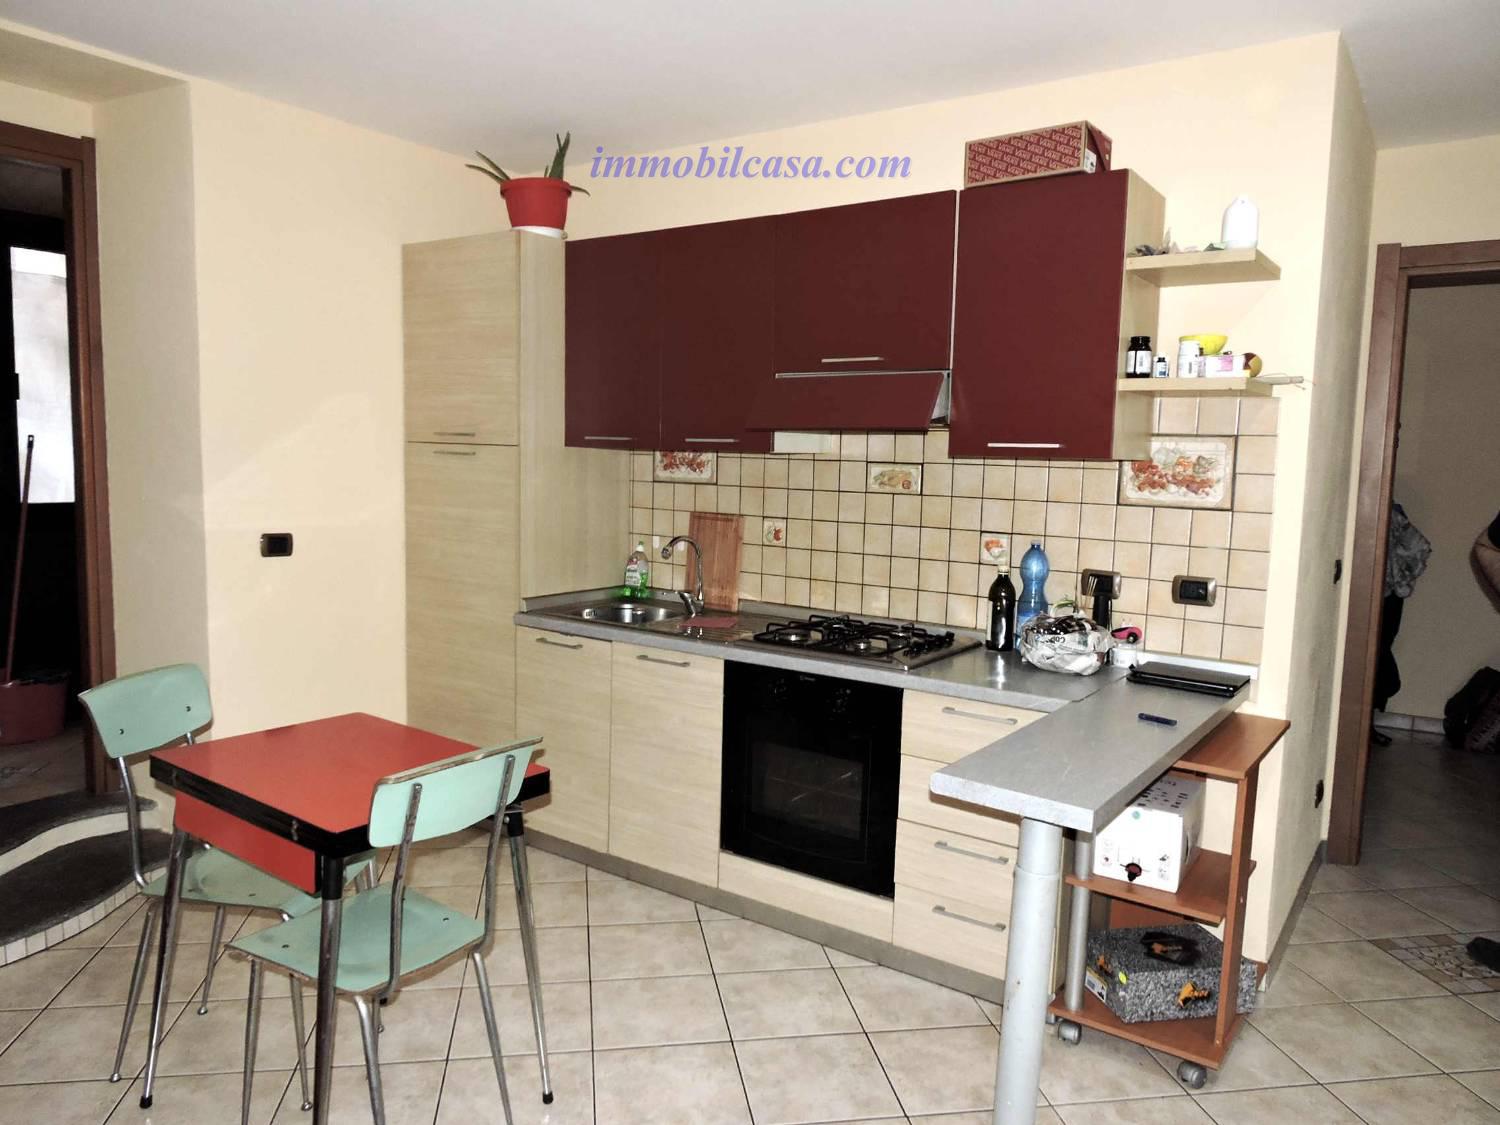 Appartamento in vendita a Cuneo, 3 locali, zona ro storico, prezzo € 105.000 | PortaleAgenzieImmobiliari.it